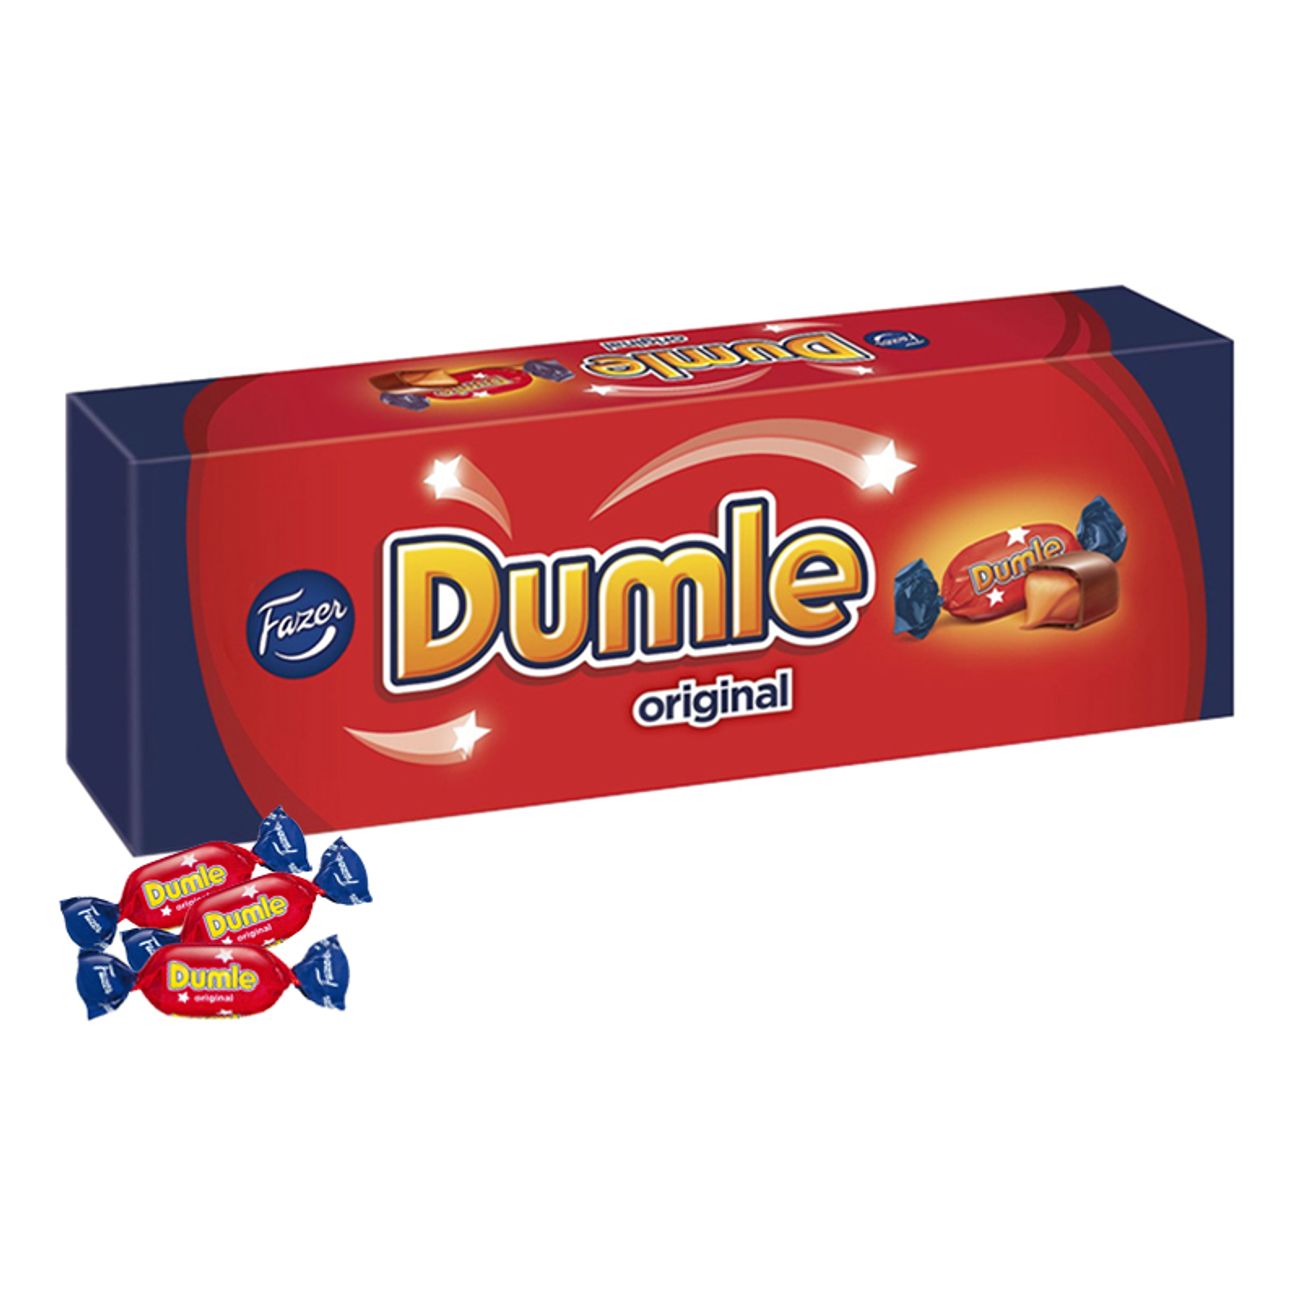 dumle-original-350g-2